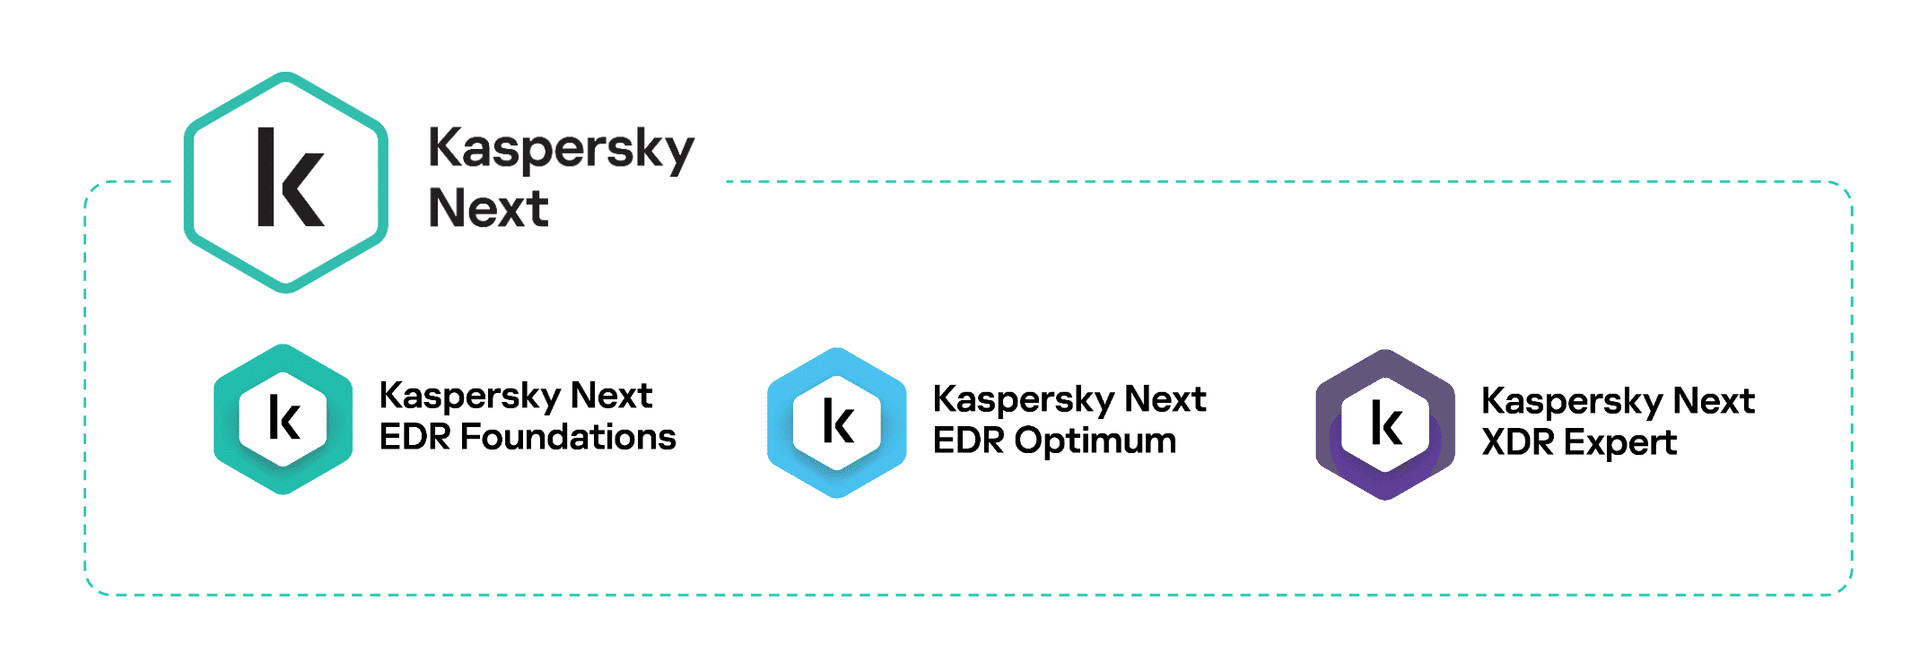 Kaspersky Next_three tiers